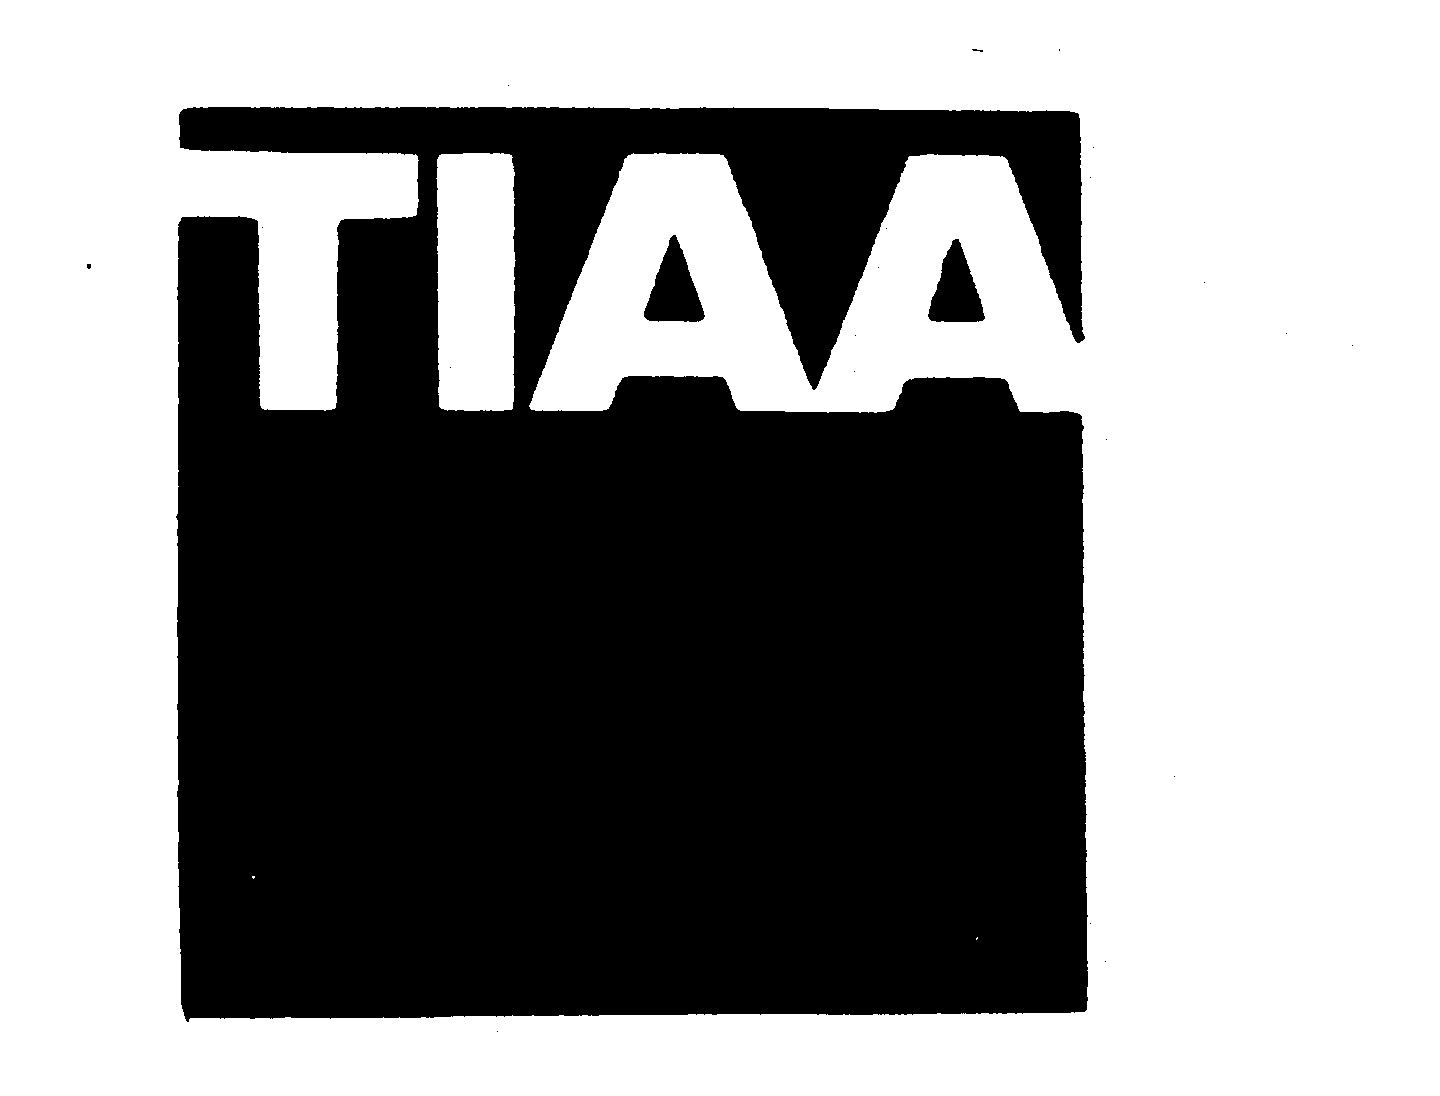 Trademark Logo TIAA